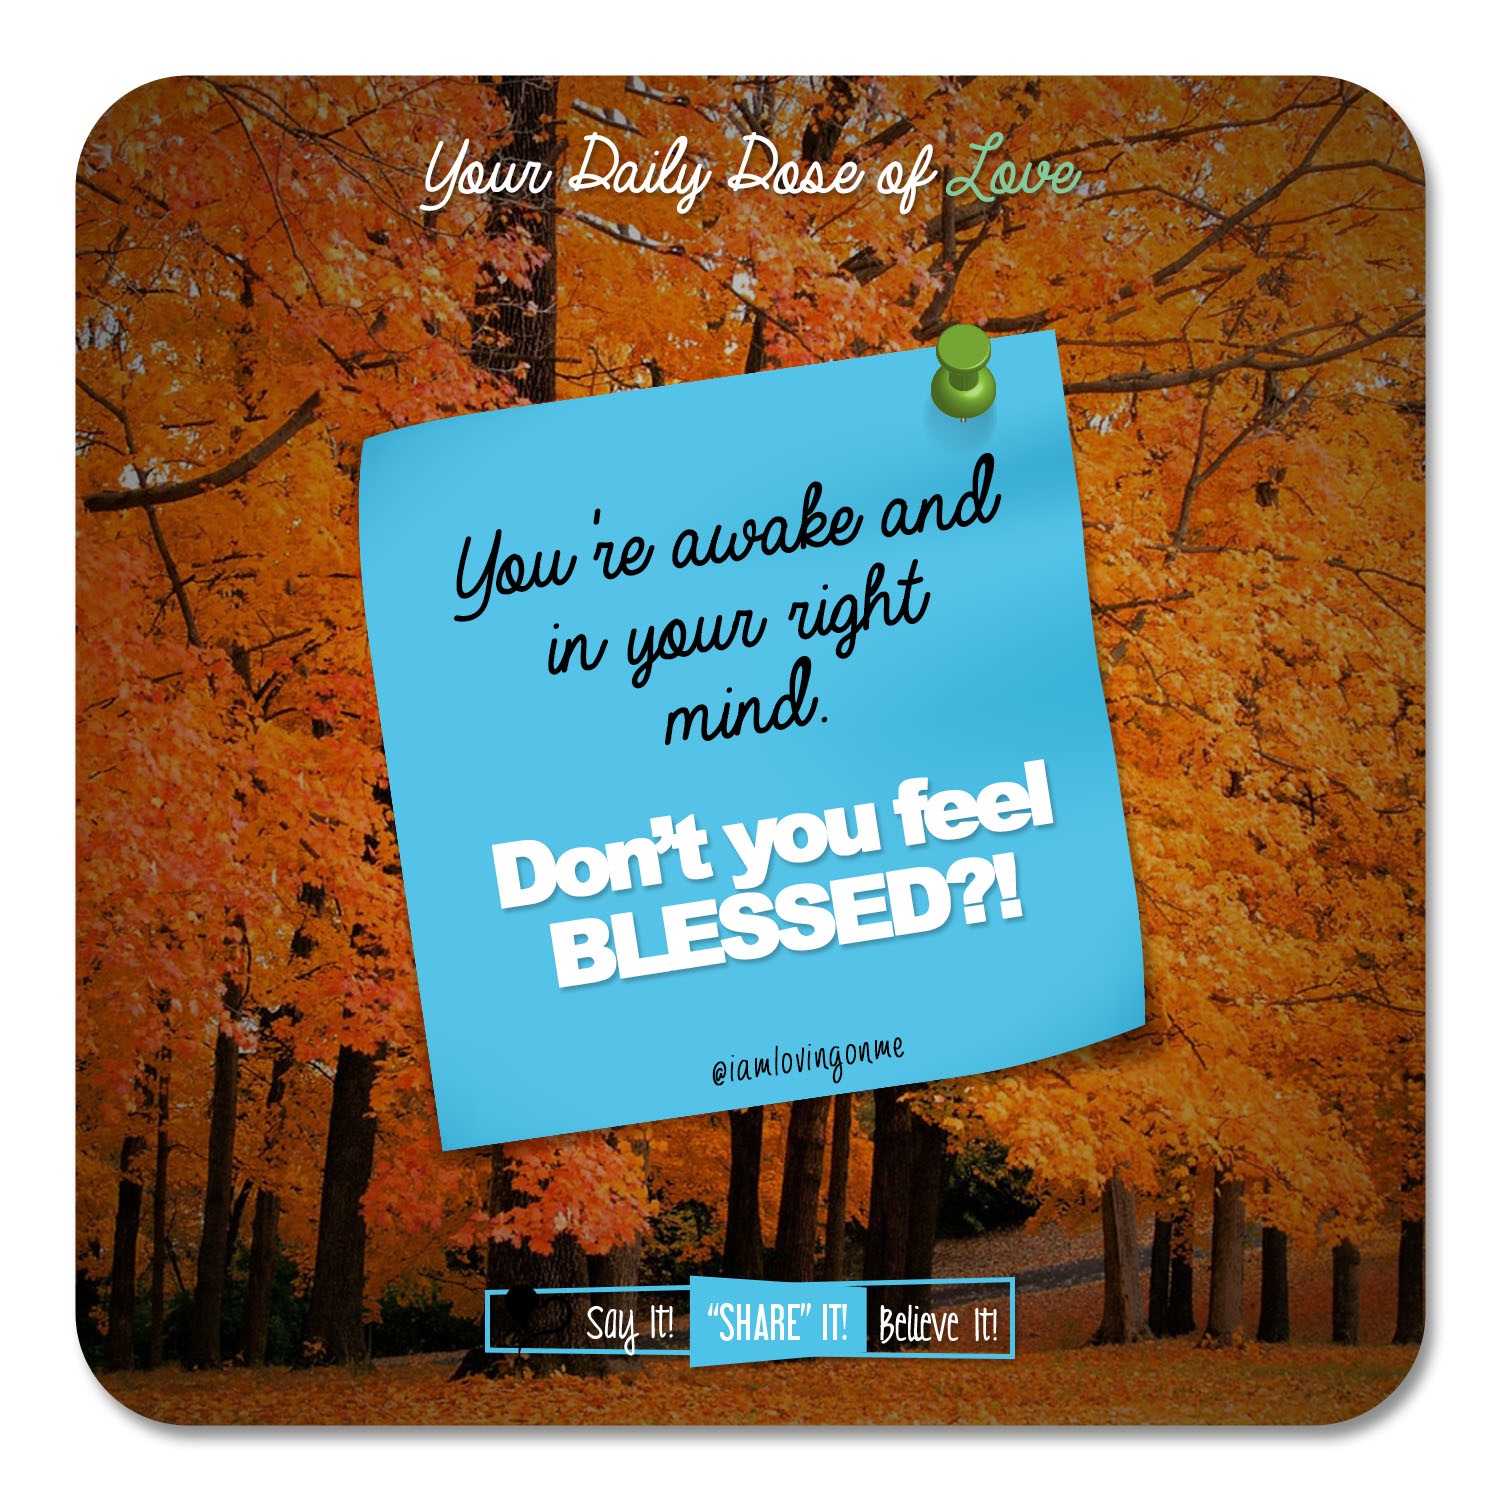 Feeling Blessed?